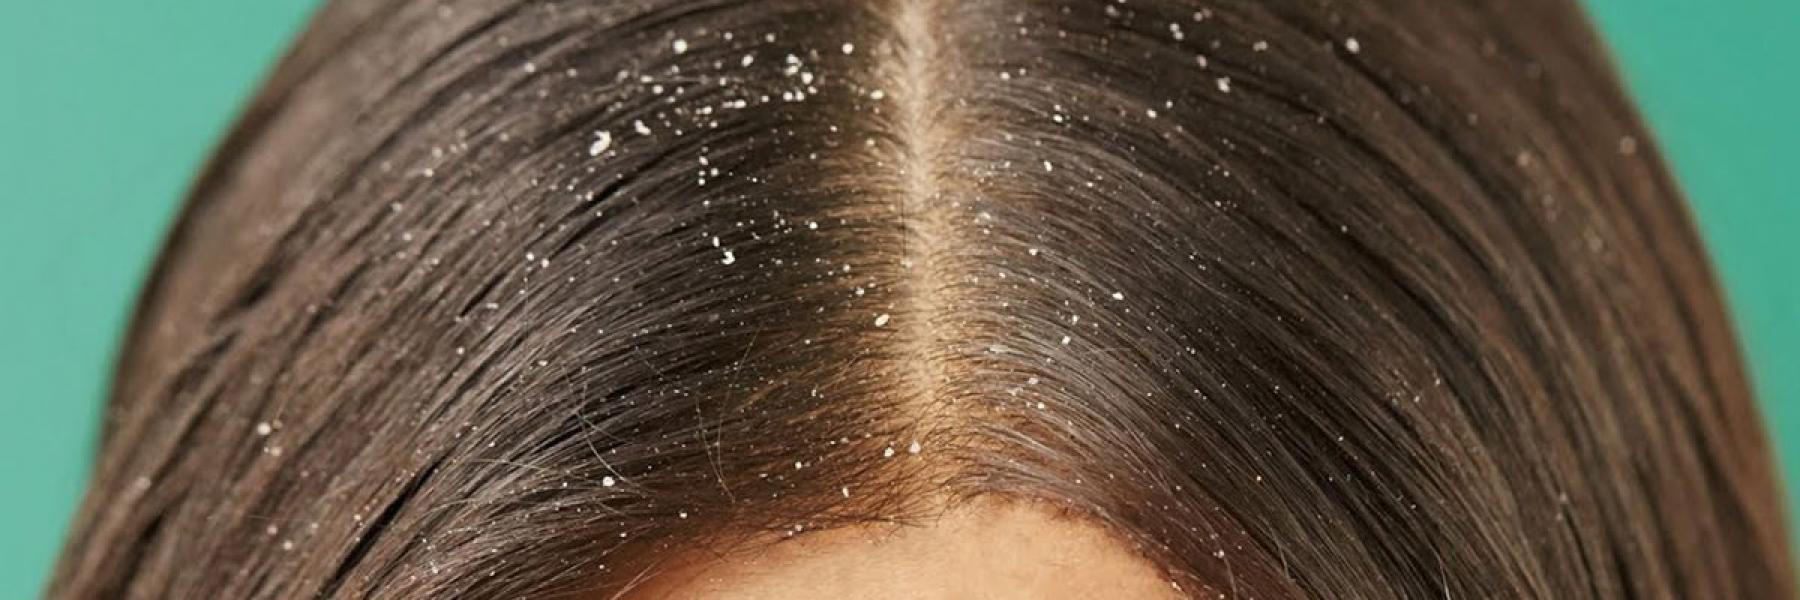 ظهور قشرة الشعر: الأسباب، الأعراض، طرق العلاج